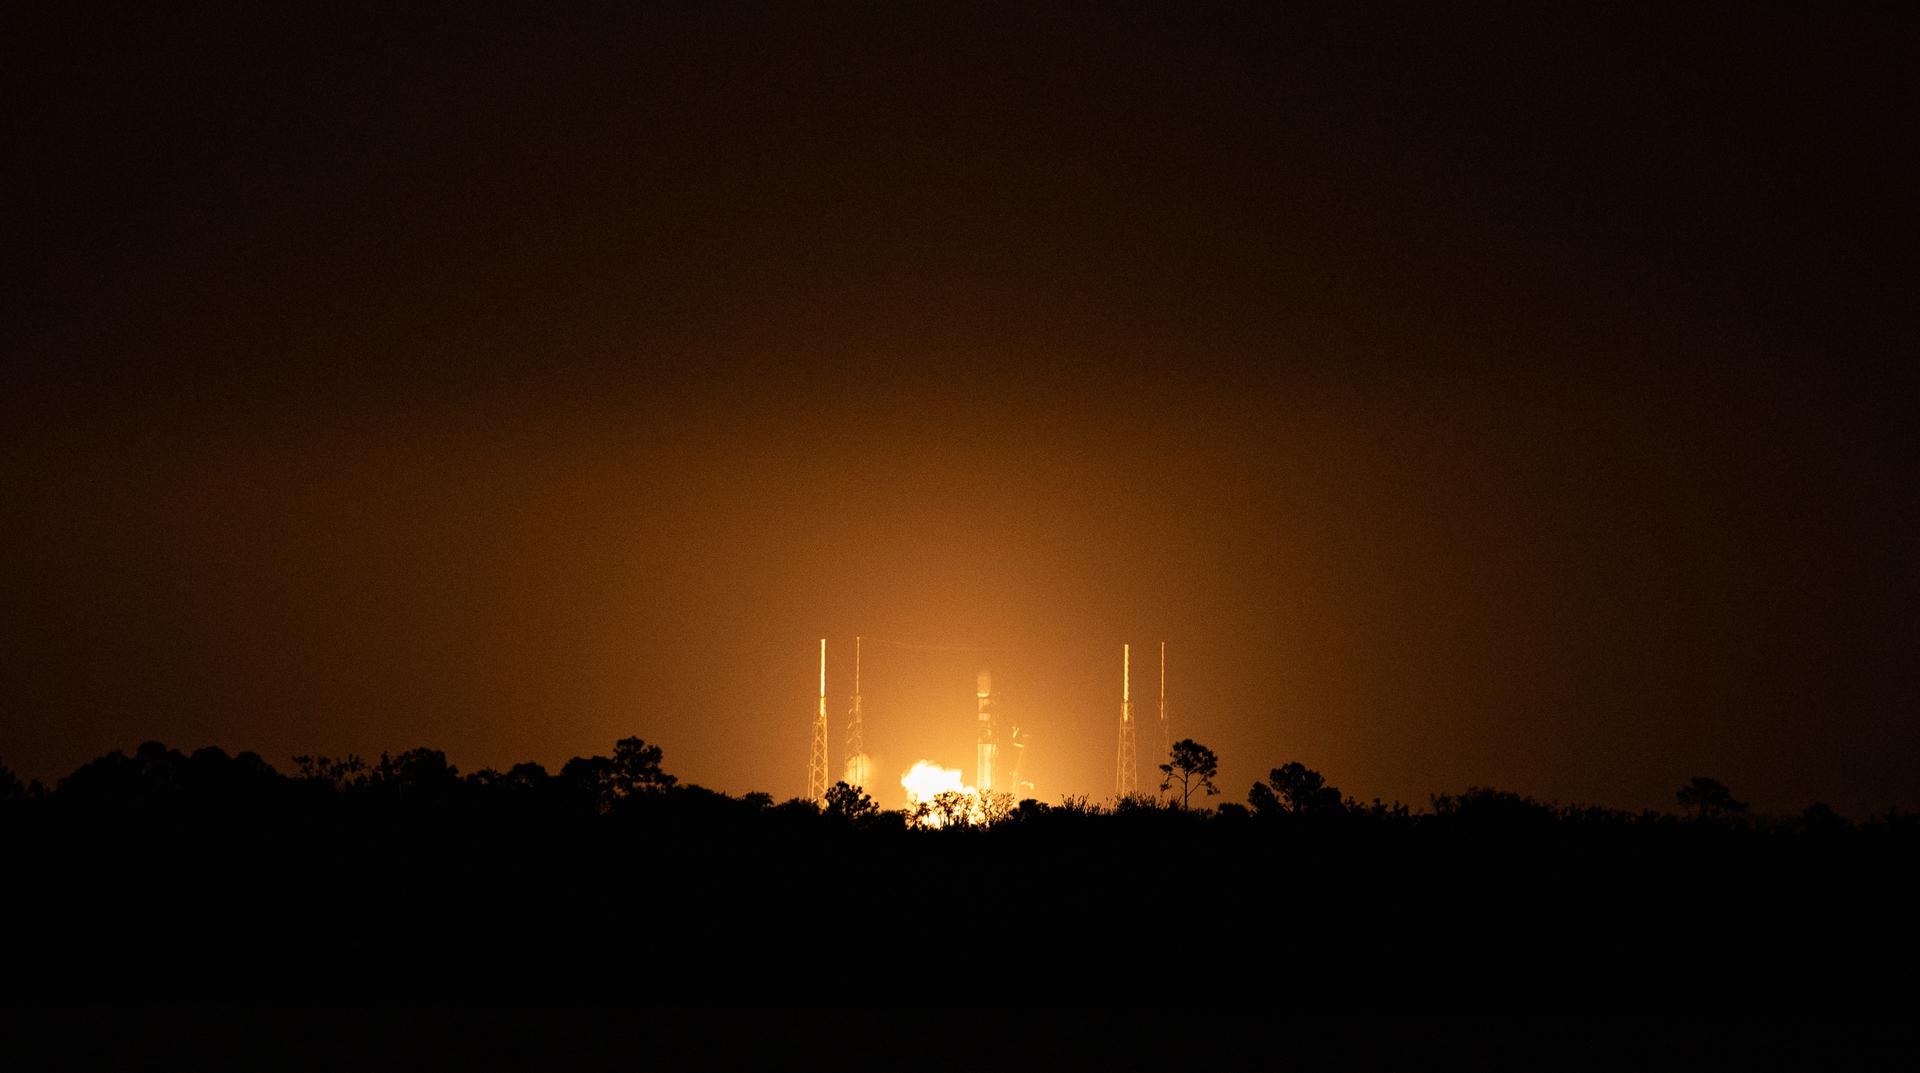 un cohete se lanza por la noche en la distancia, recortando la silueta de los árboles entre él y el fotógrafo